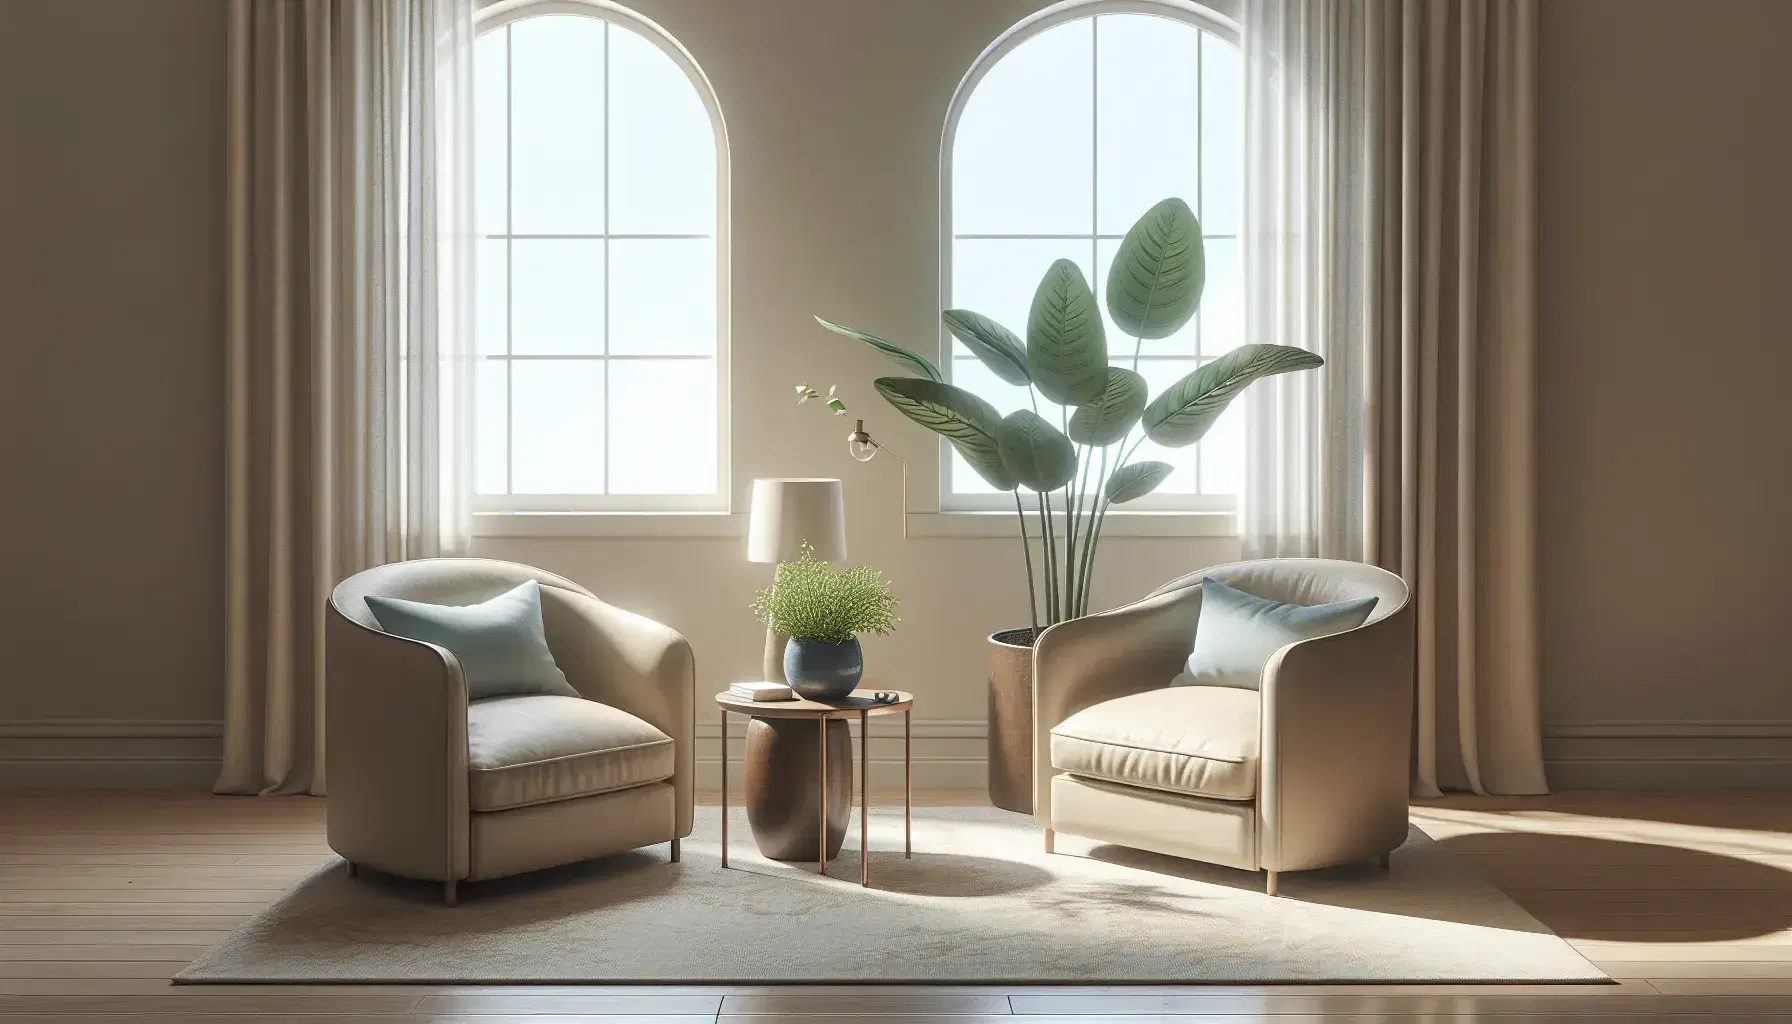 Sala de terapia acogedora con dos sillones beige enfrentados, cojín azul claro, planta interior, mesa de madera y alfombra gris, bajo una iluminación natural suave.